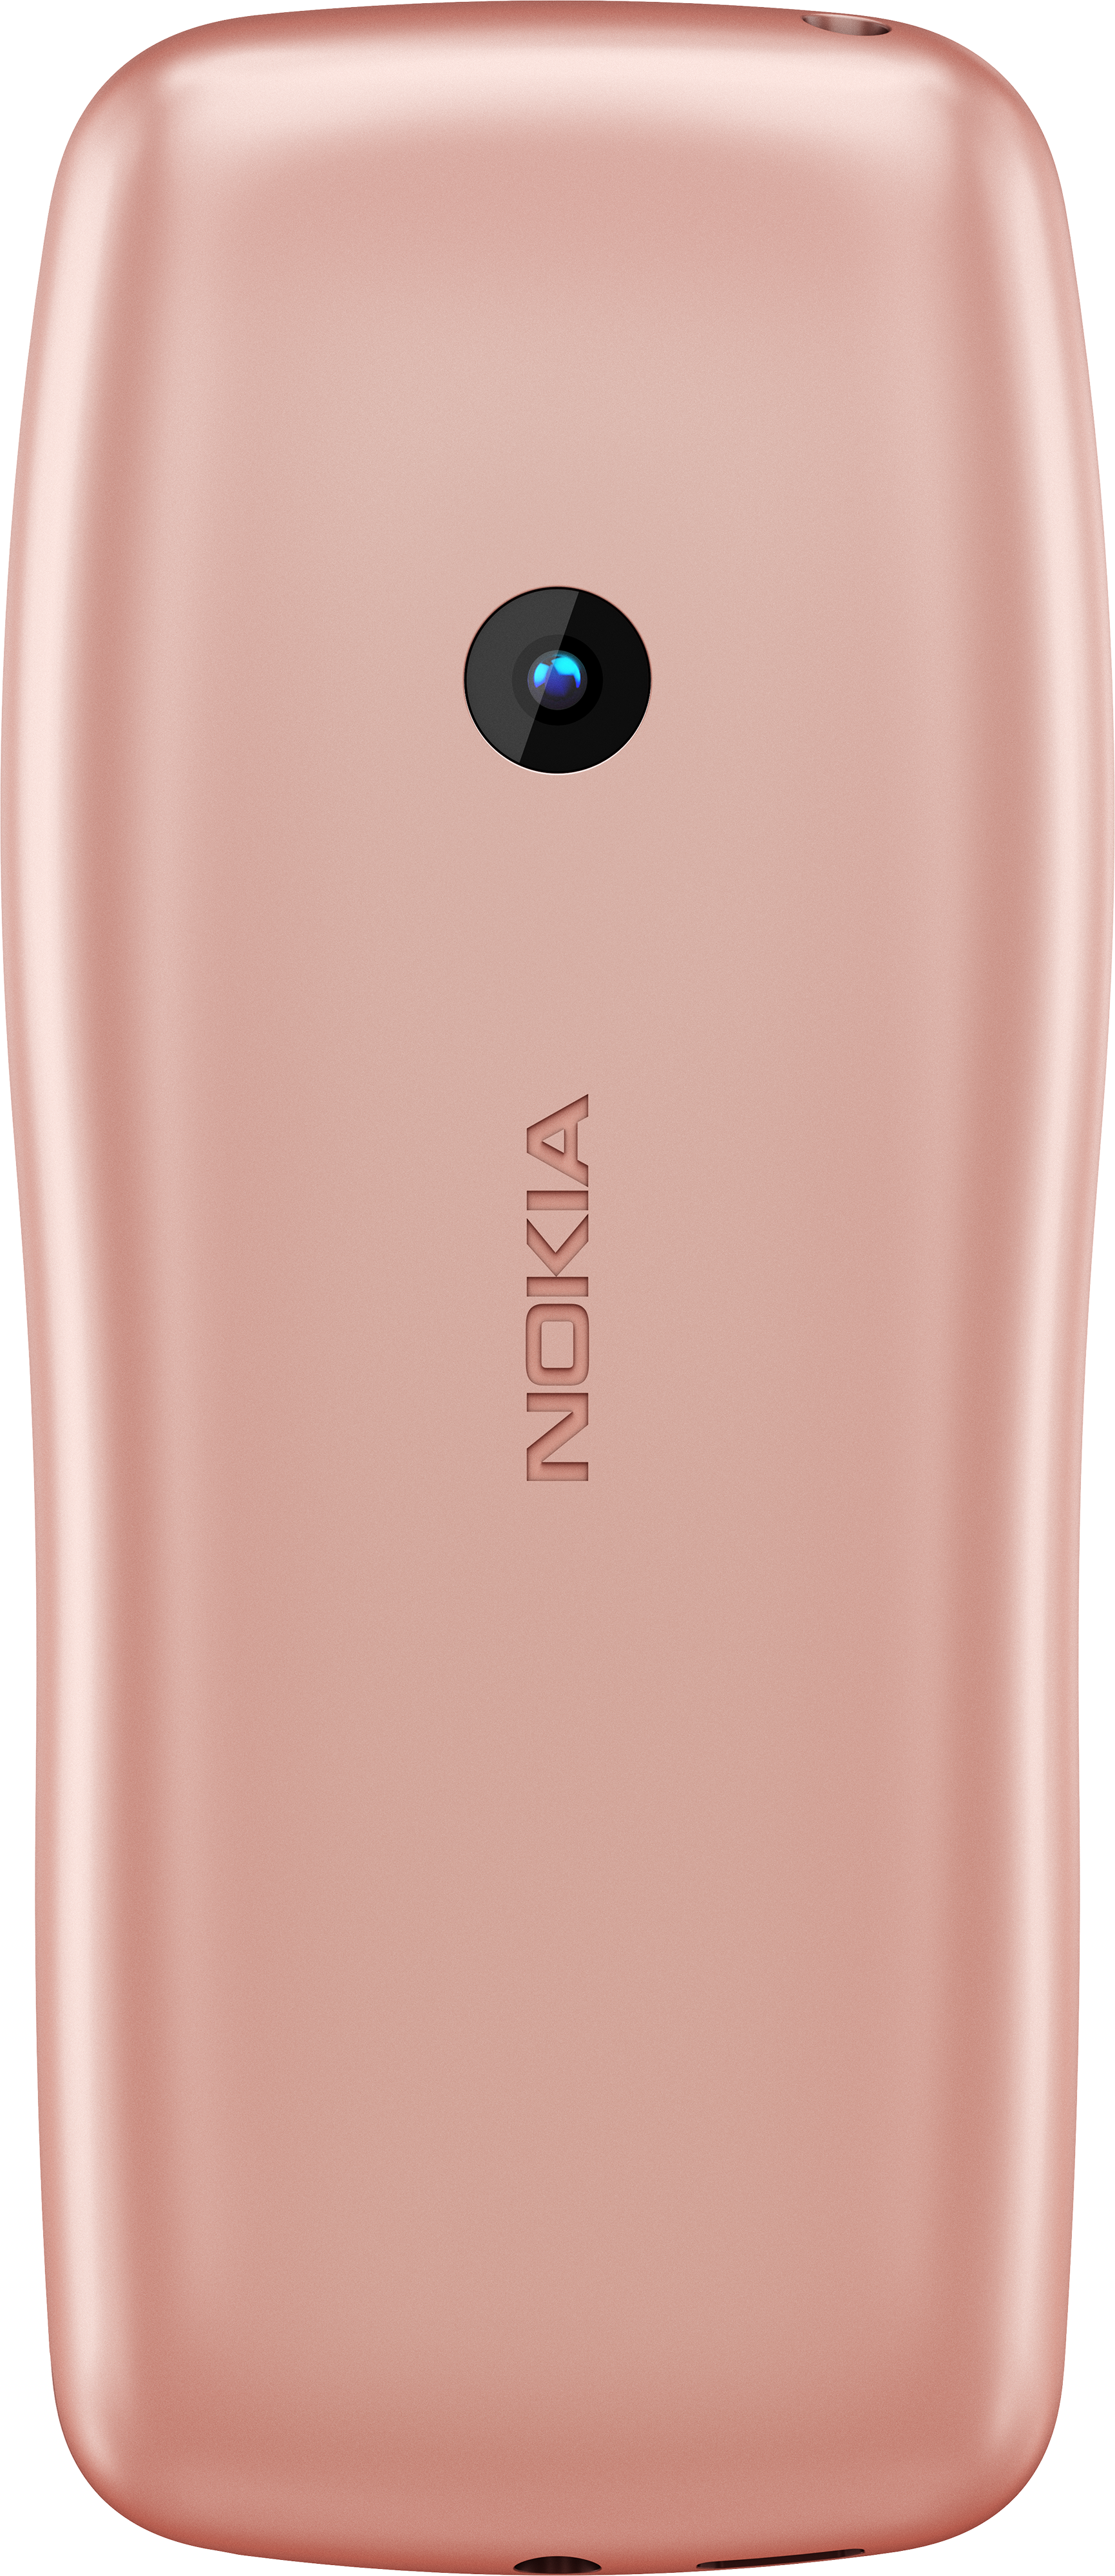 nokia phones 2022 pink